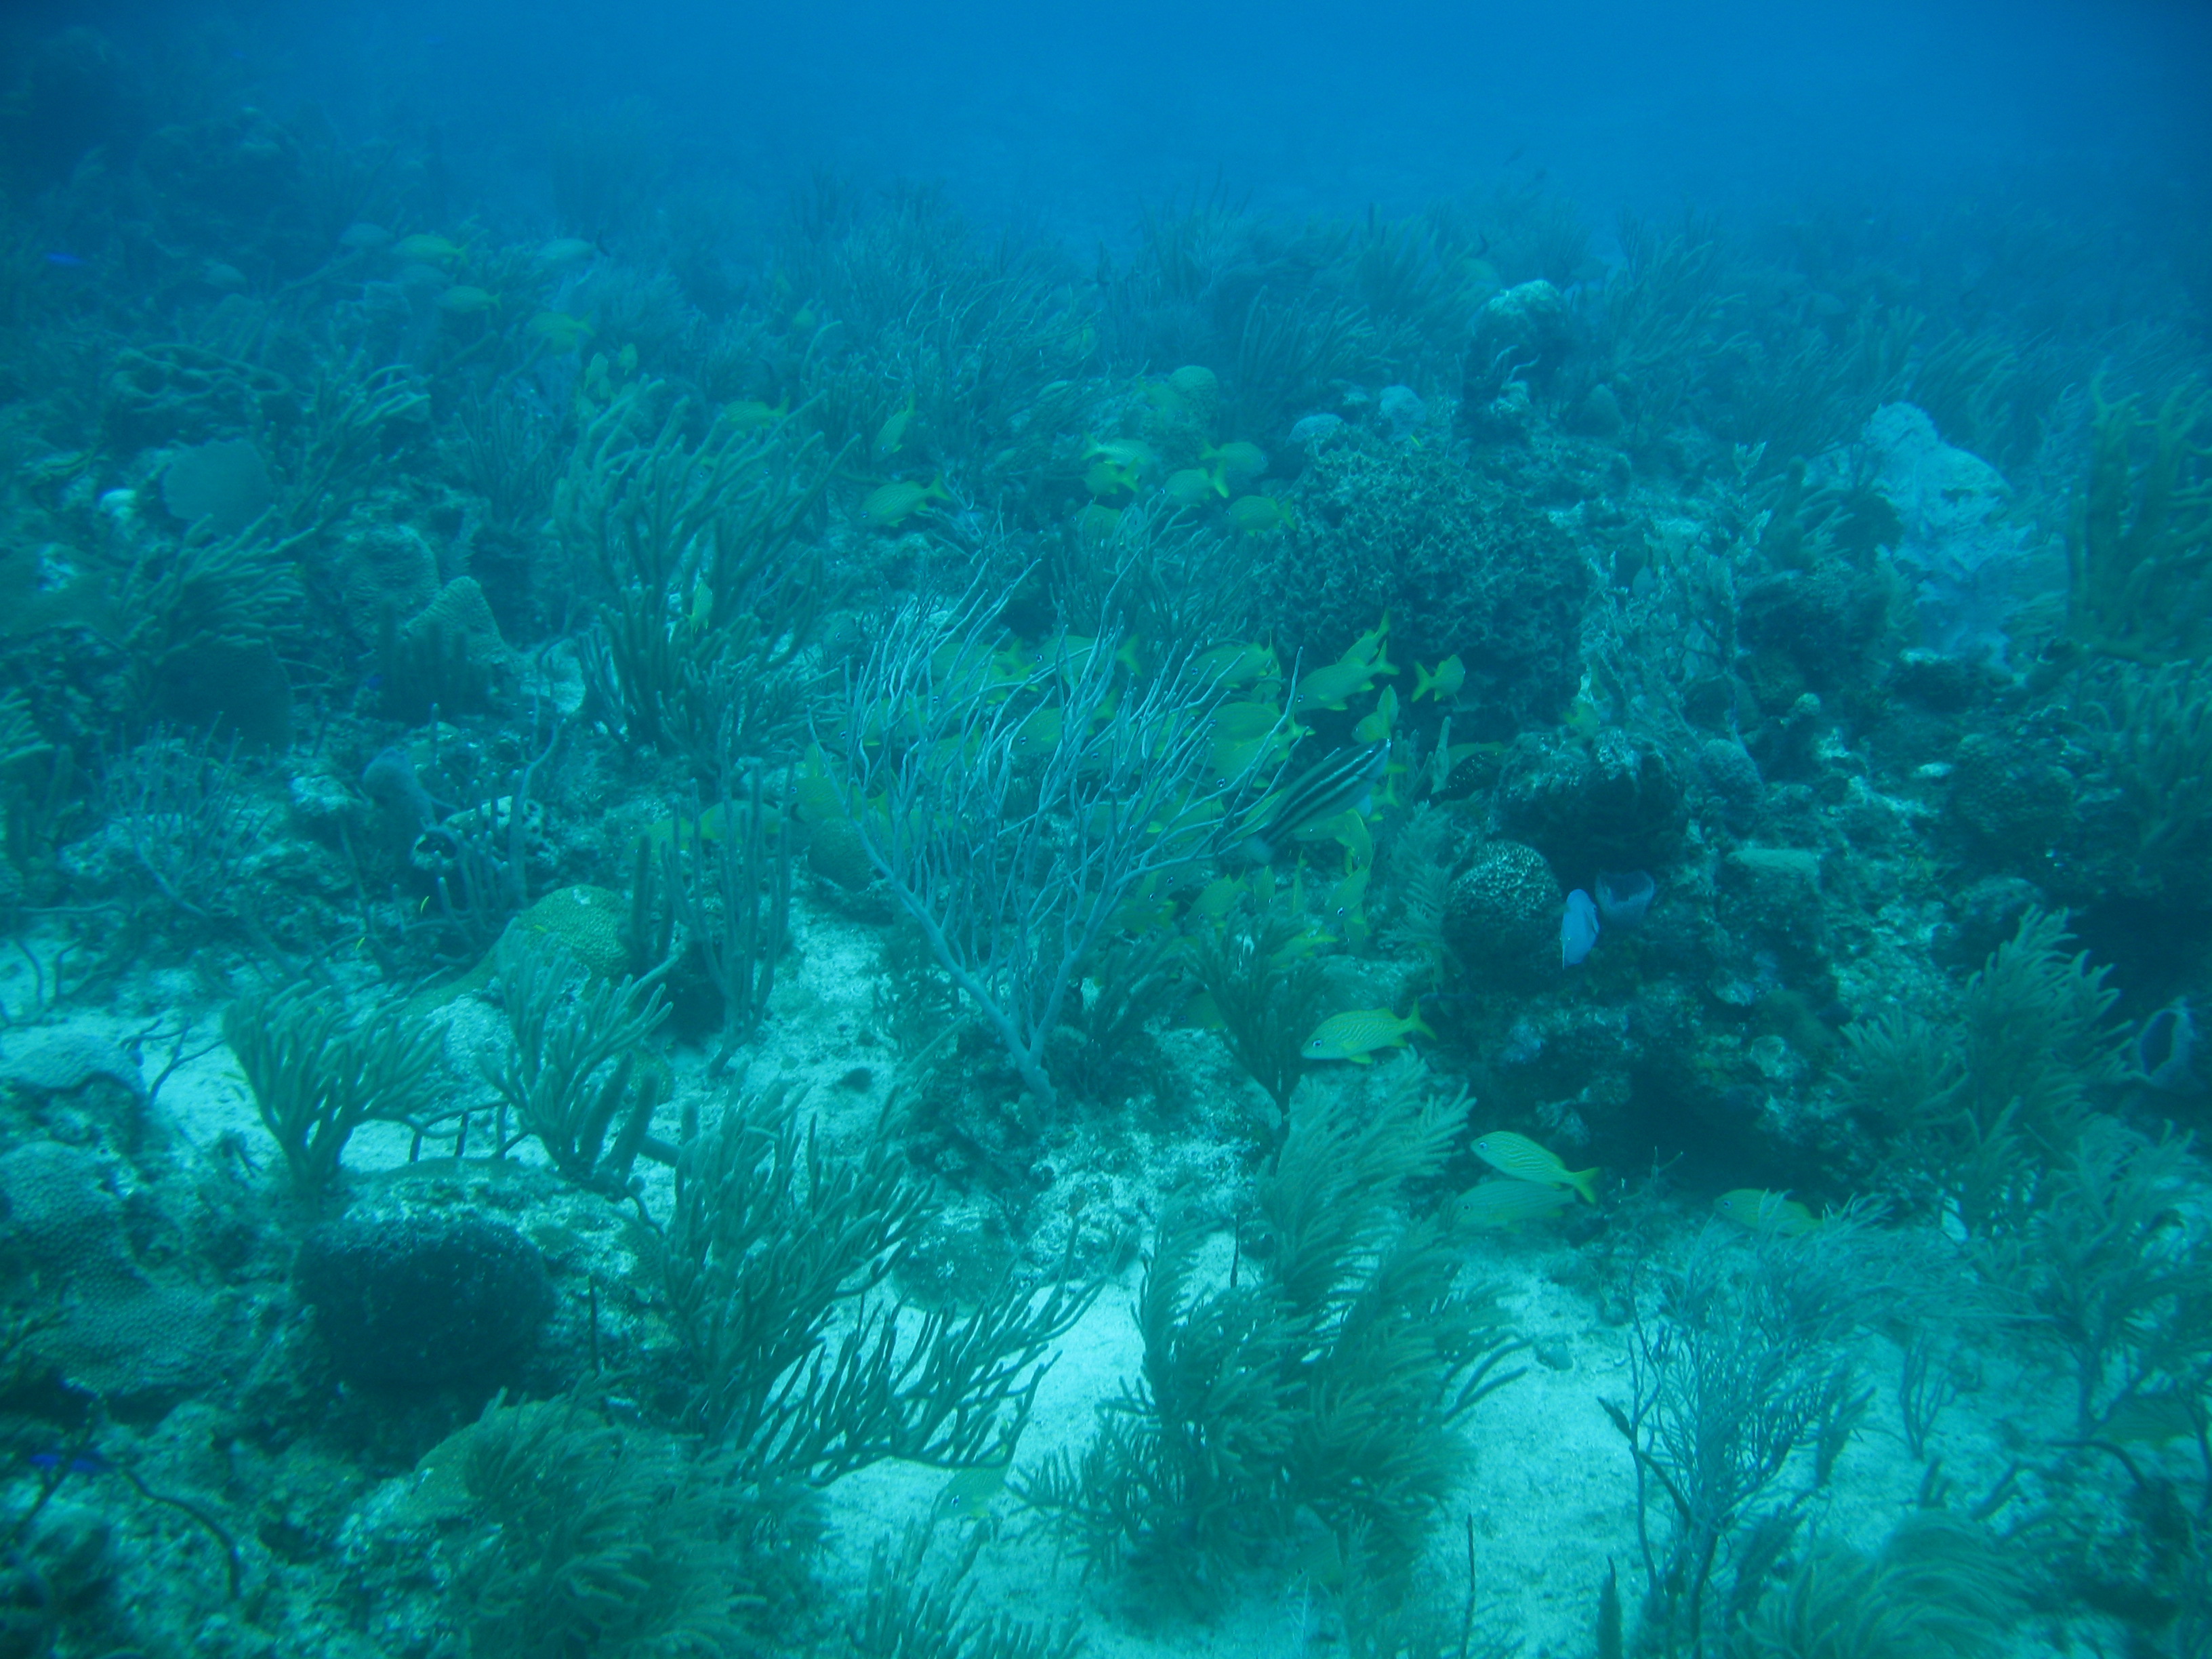 Coral Reef taken by Amy Warren